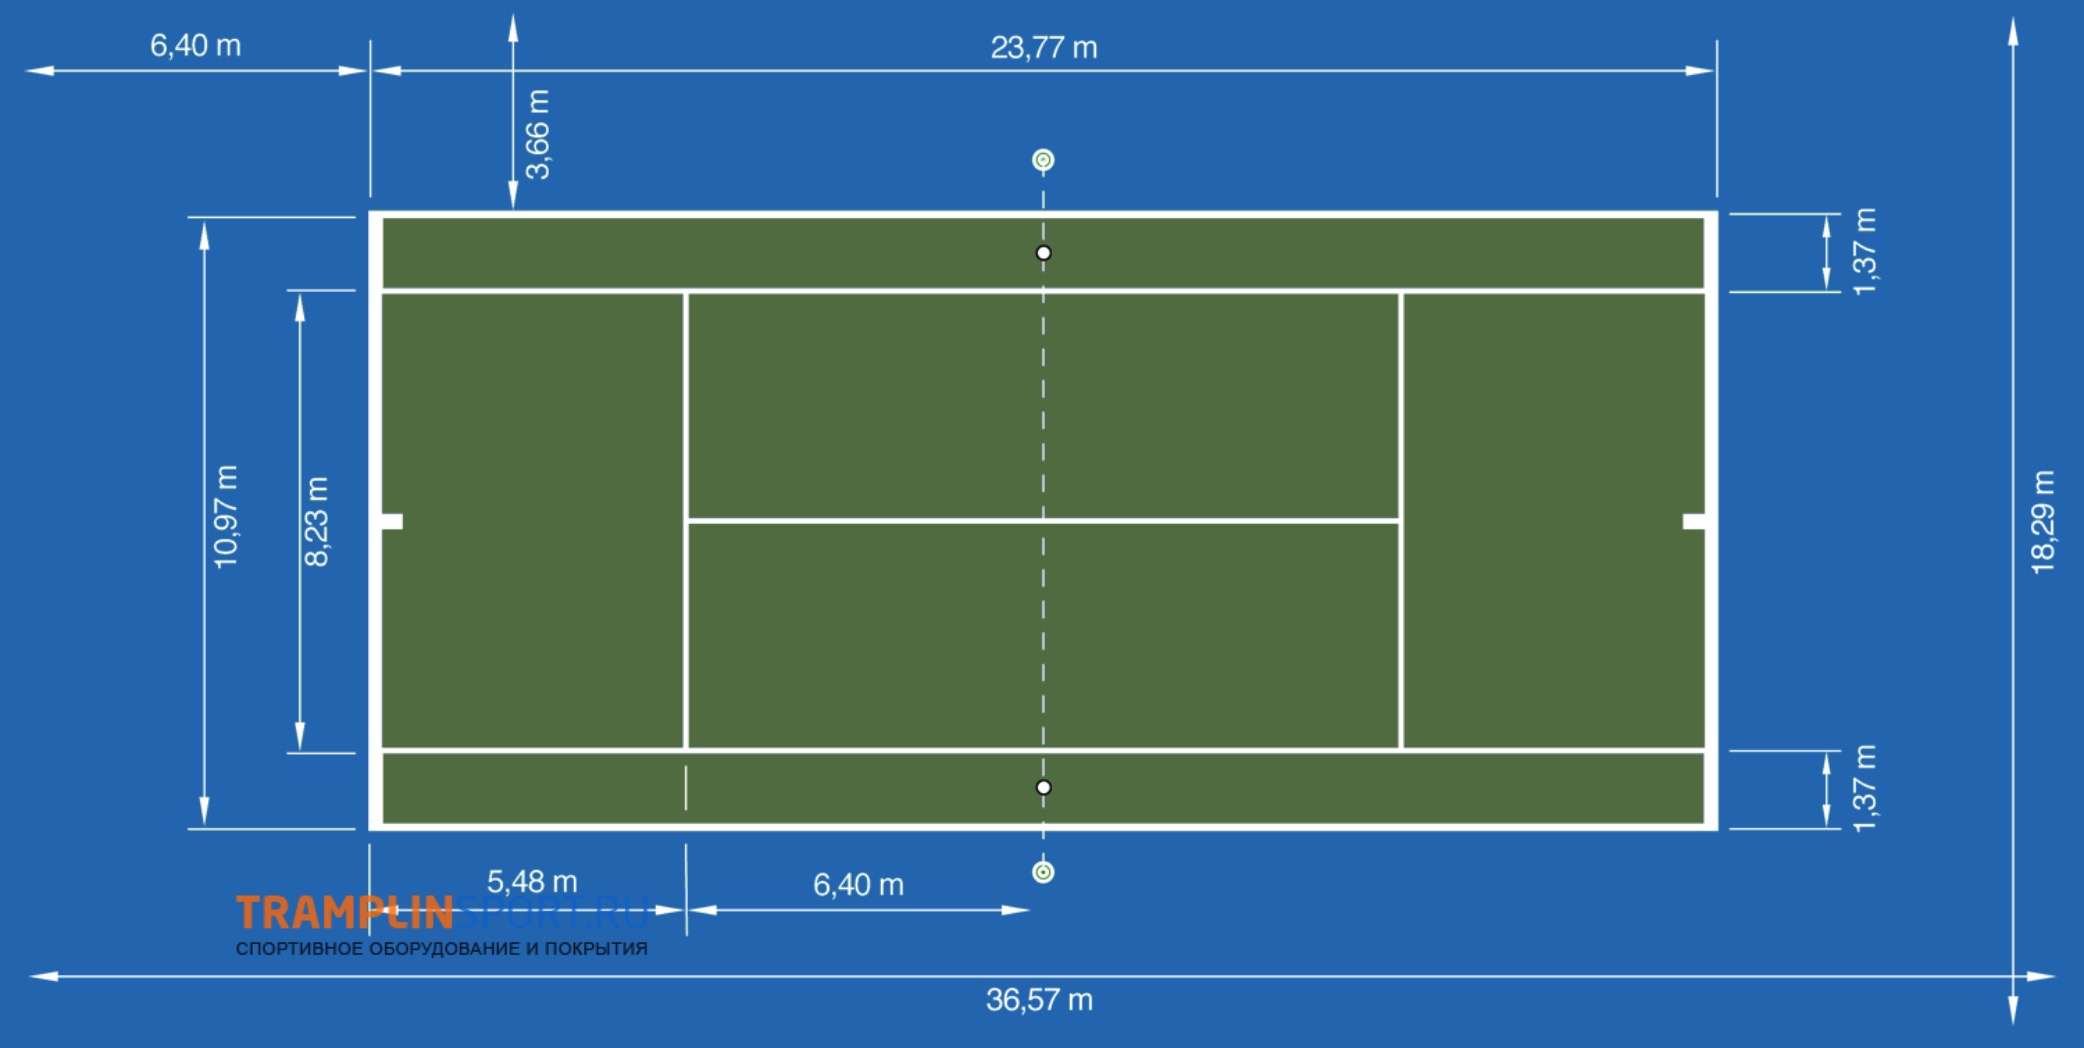 Размер корта для большого тенниса. Размер теннисного корта стандарт чертеж. Разметка волейбольной площадки 9х18. Большой теннис Размеры площадки. Размер теннисной площадки стандарт.